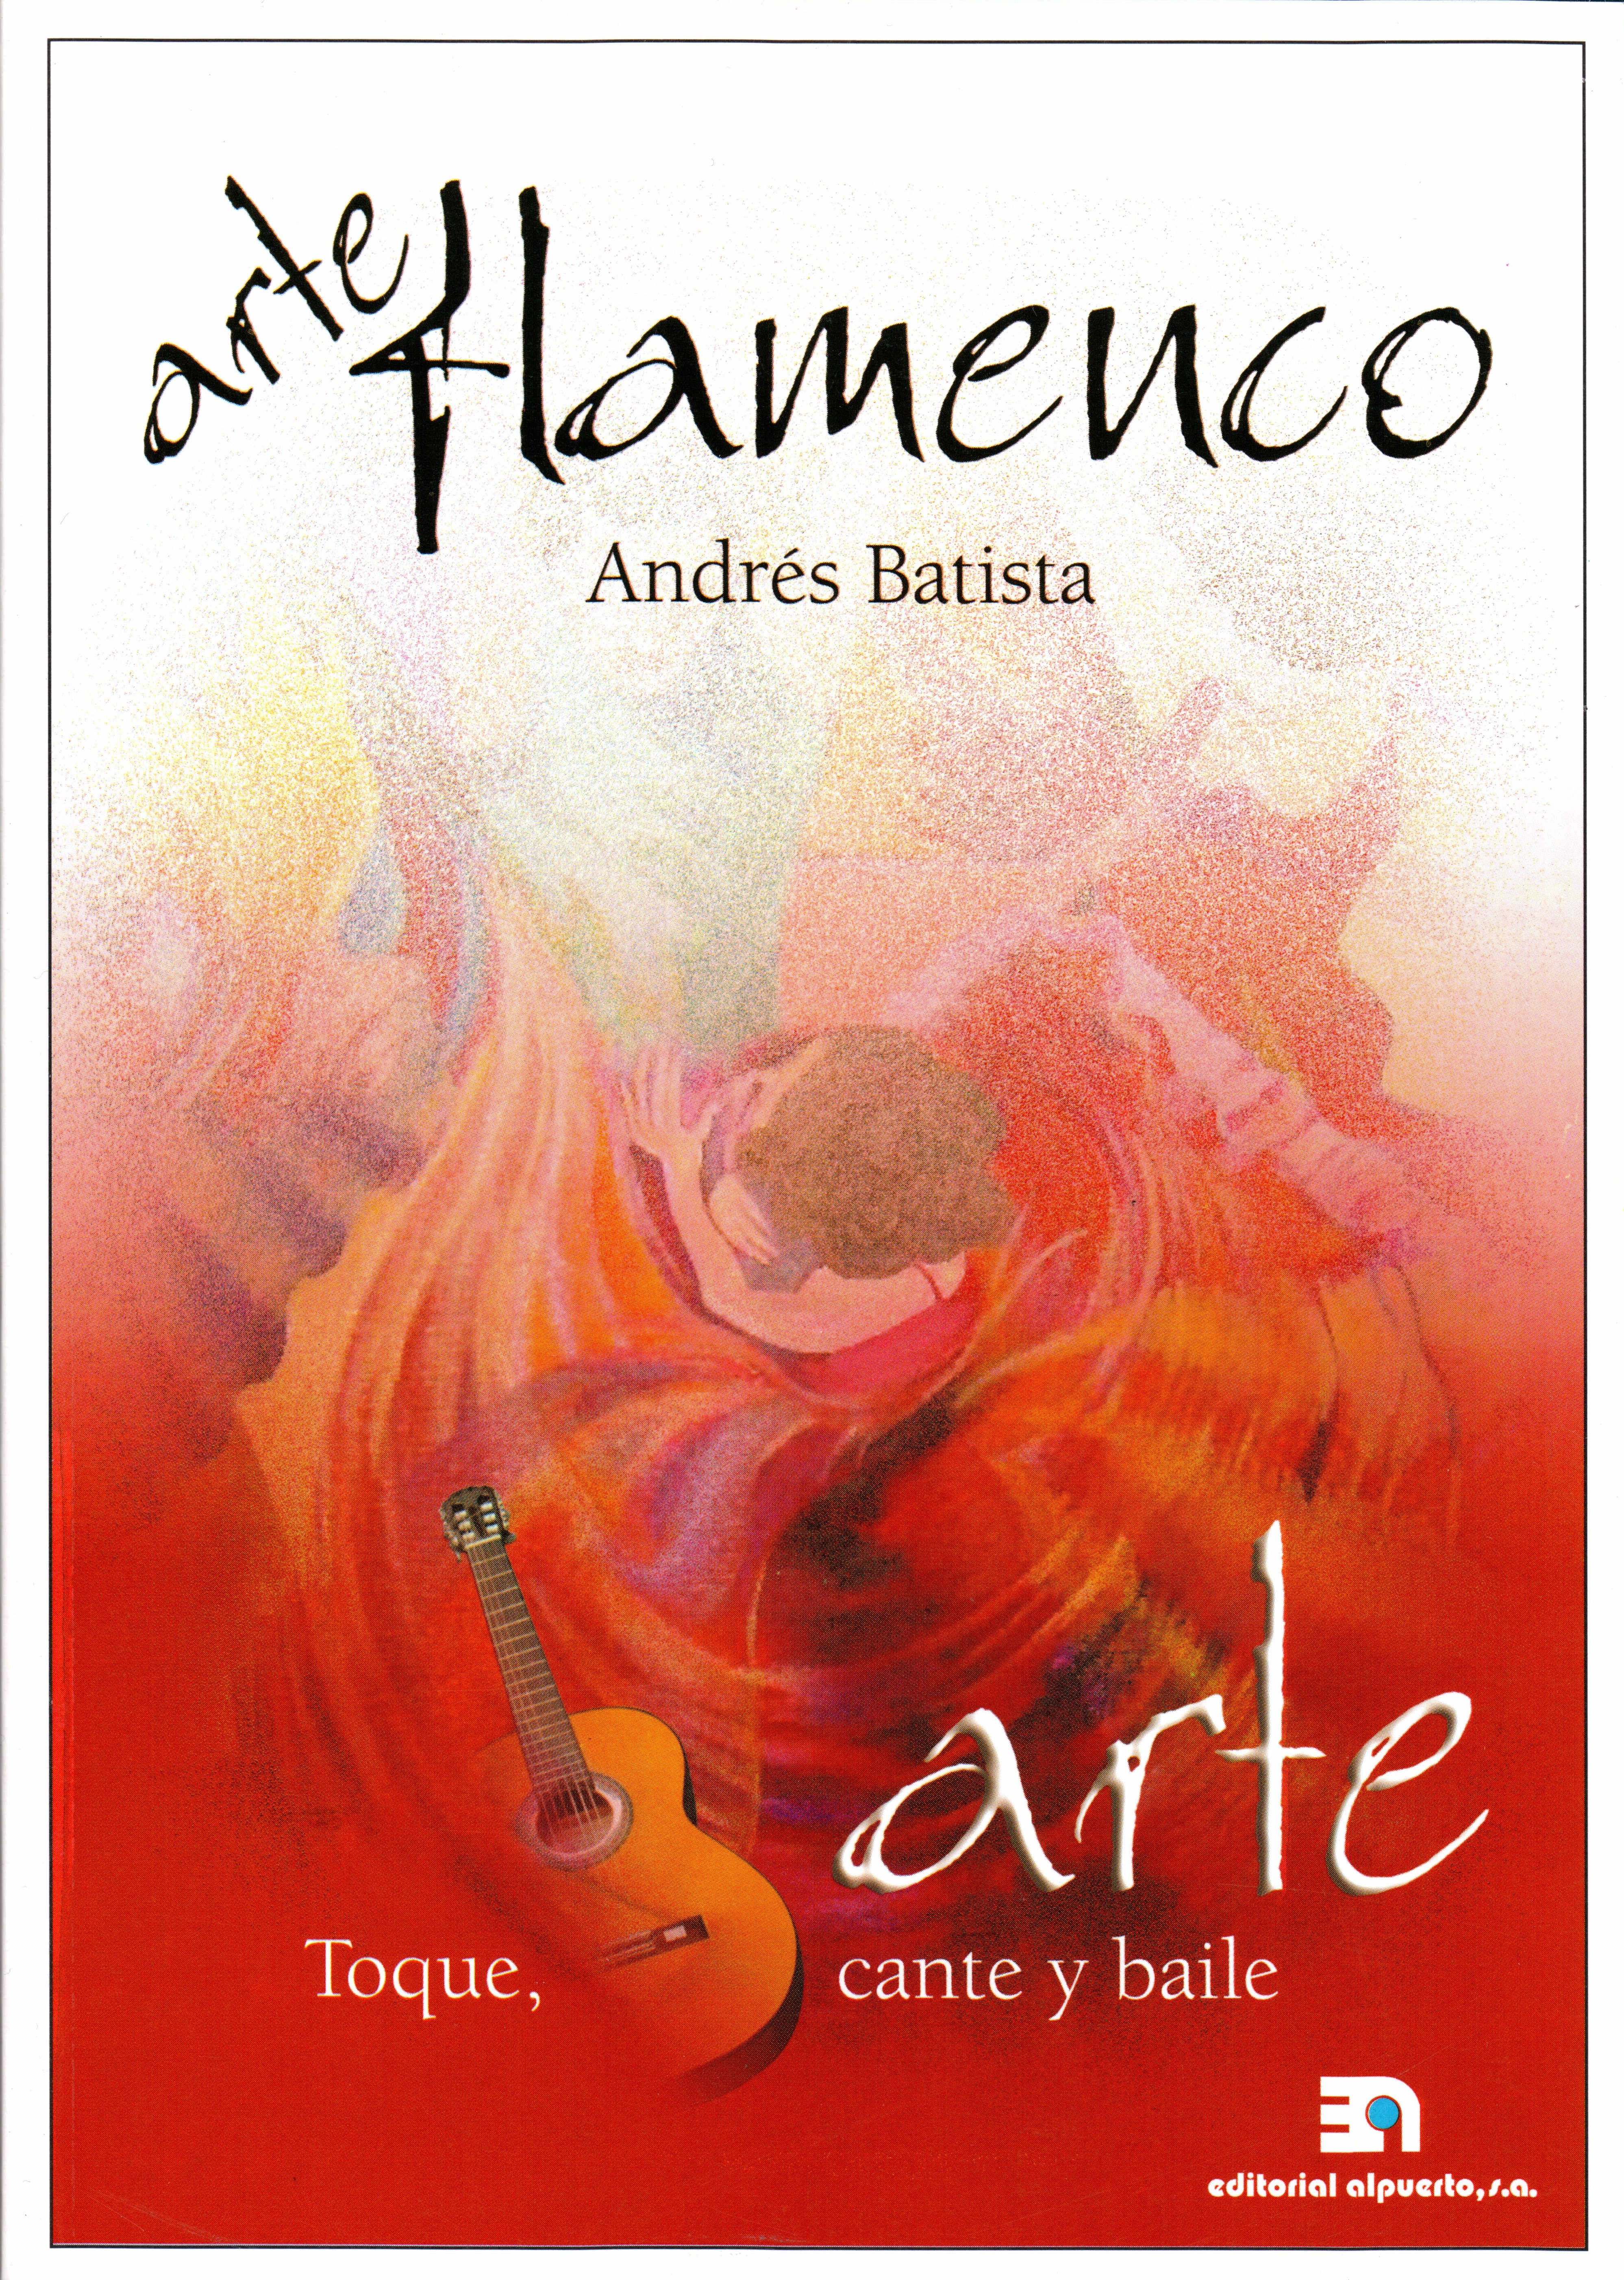 Arte flamenco
Toque, cante y baile